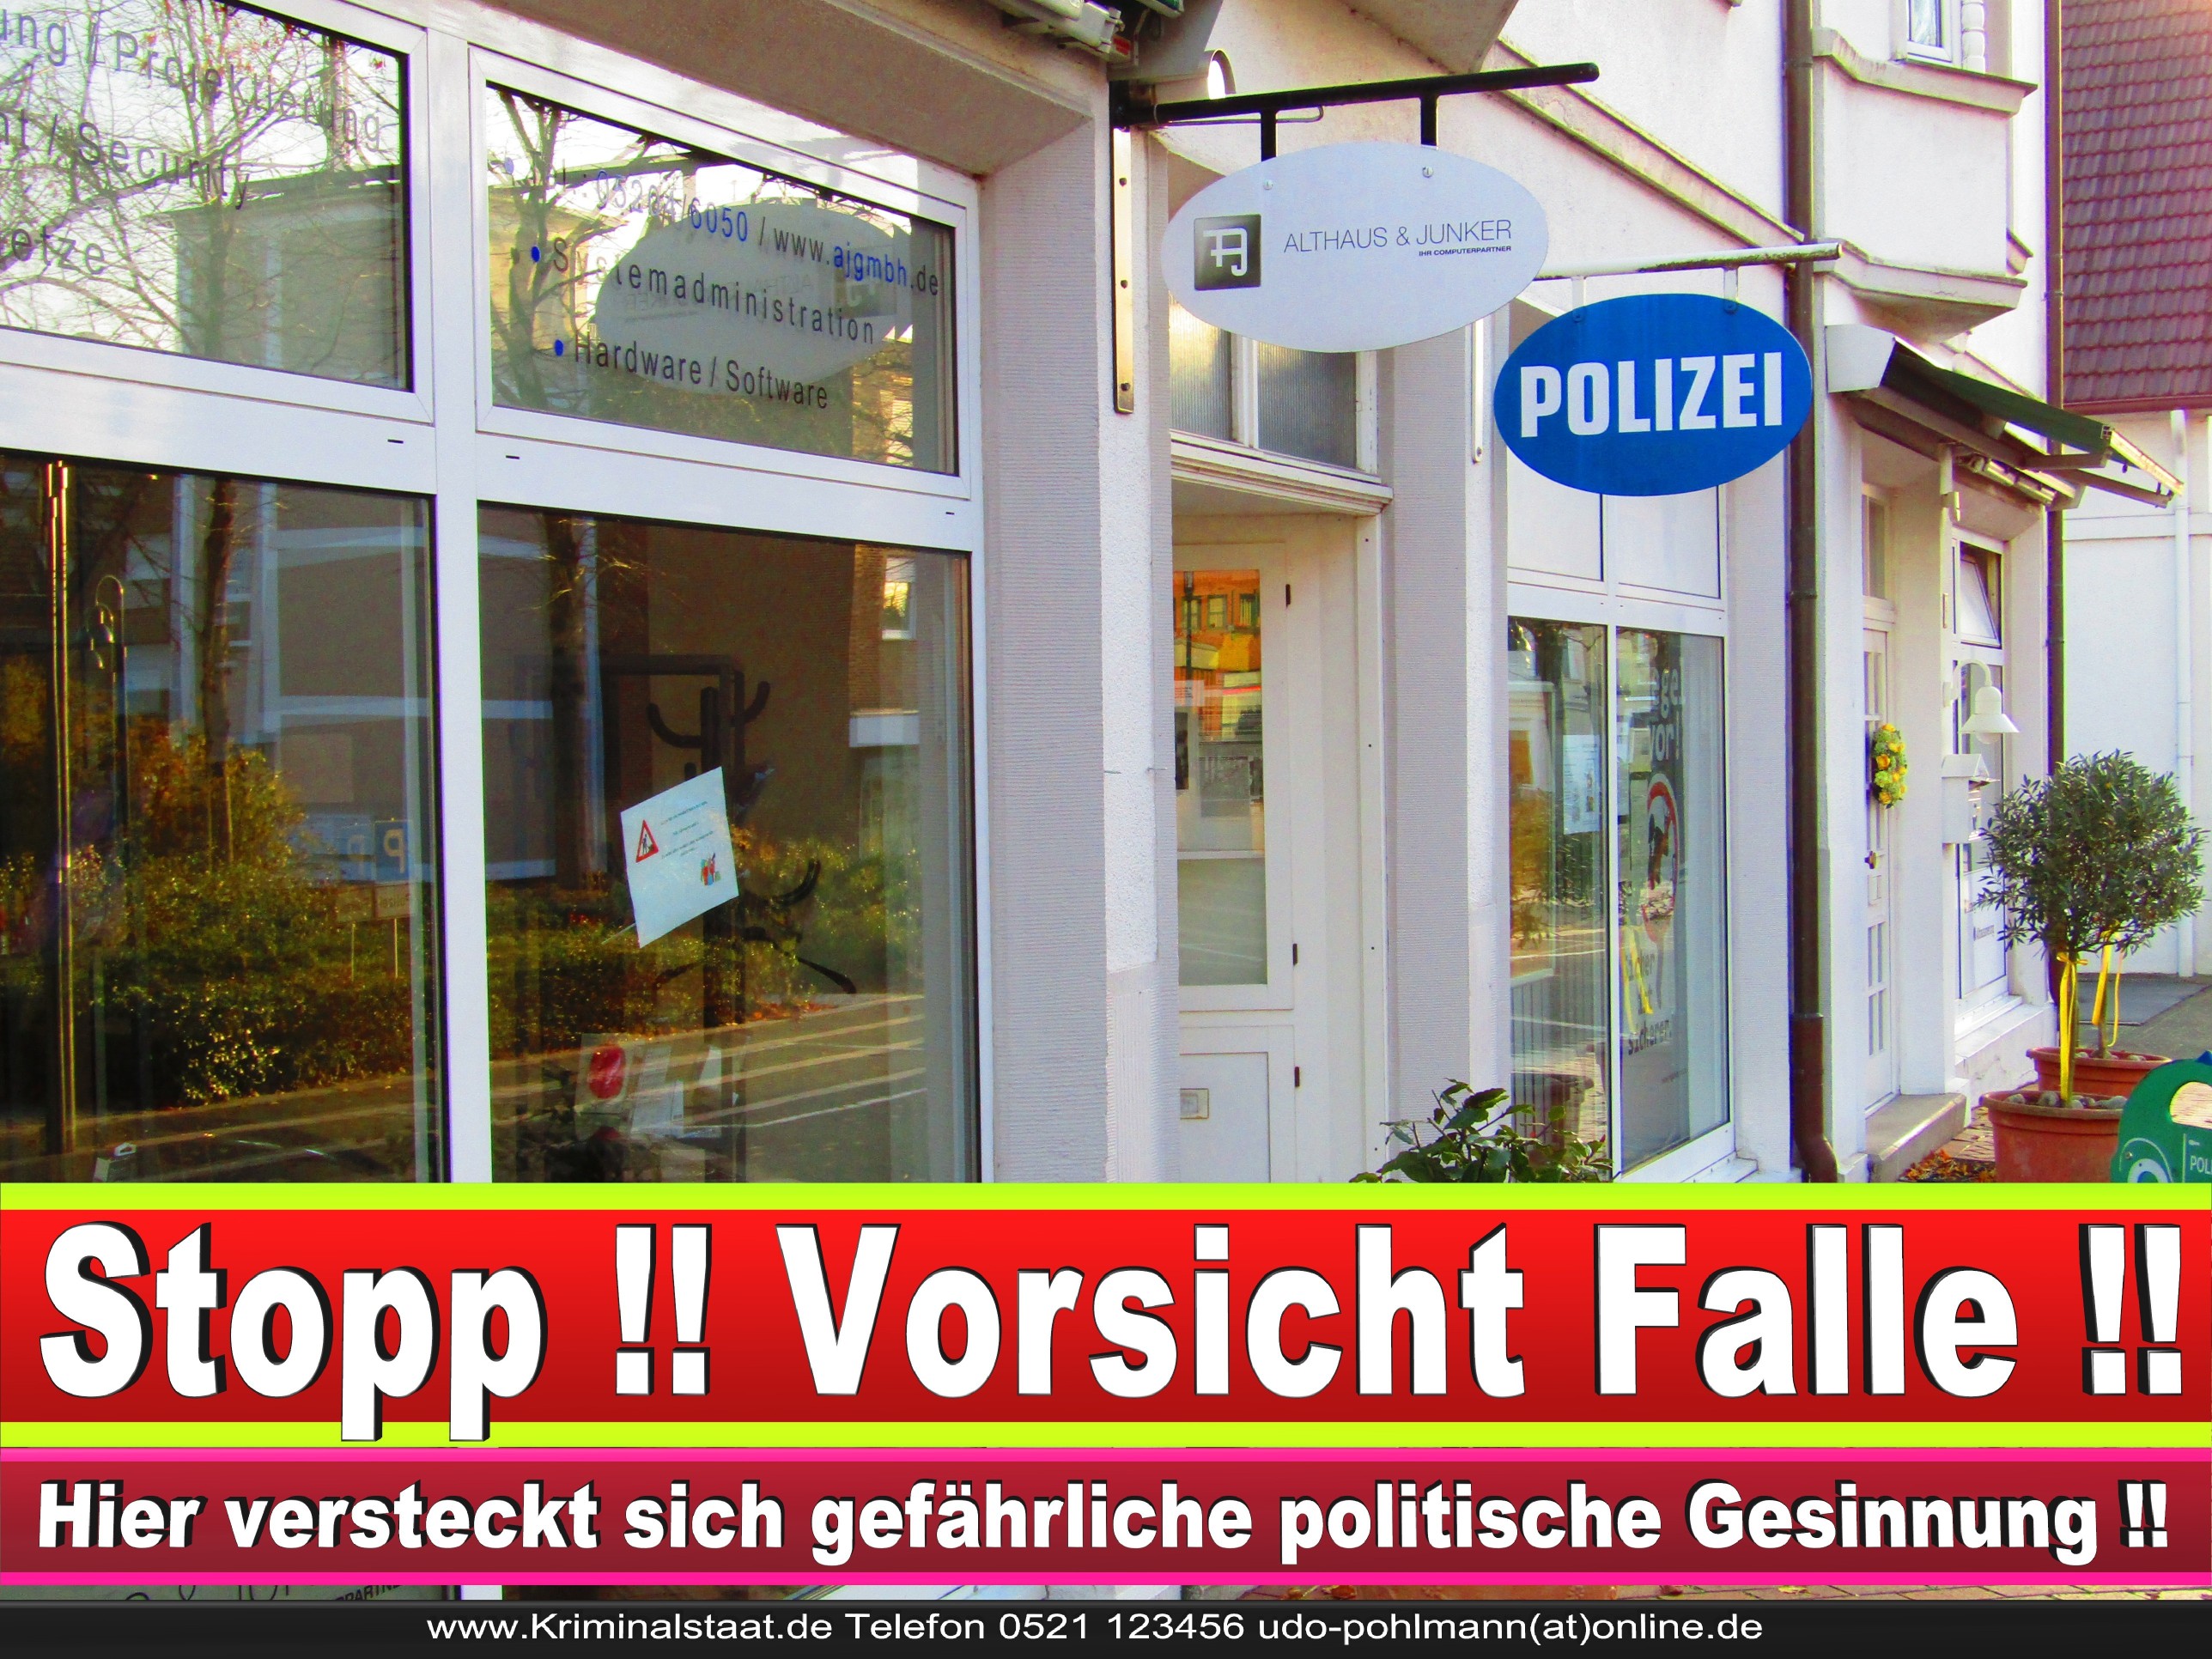 Polizei Steinhagen CDU SPD FDP Ortsverband CDU Bürgerbüro CDU SPD Korruption Polizei Bürgermeister Karte Telefonbuch NRW OWL (3)